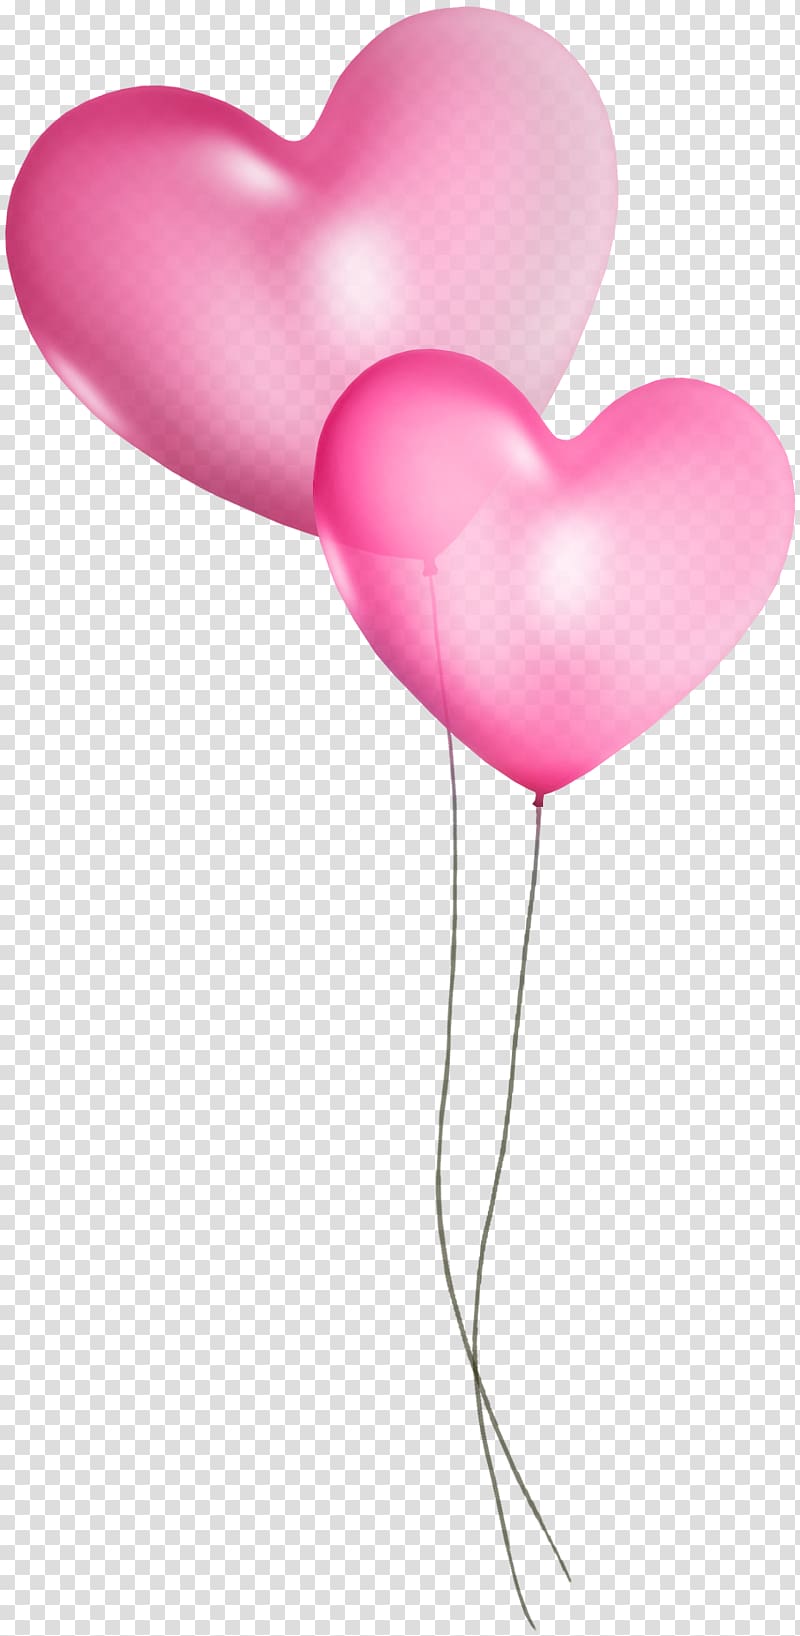 Pink heart balloon illustration, Balloon Blue Turquoise Teal , Pink ...